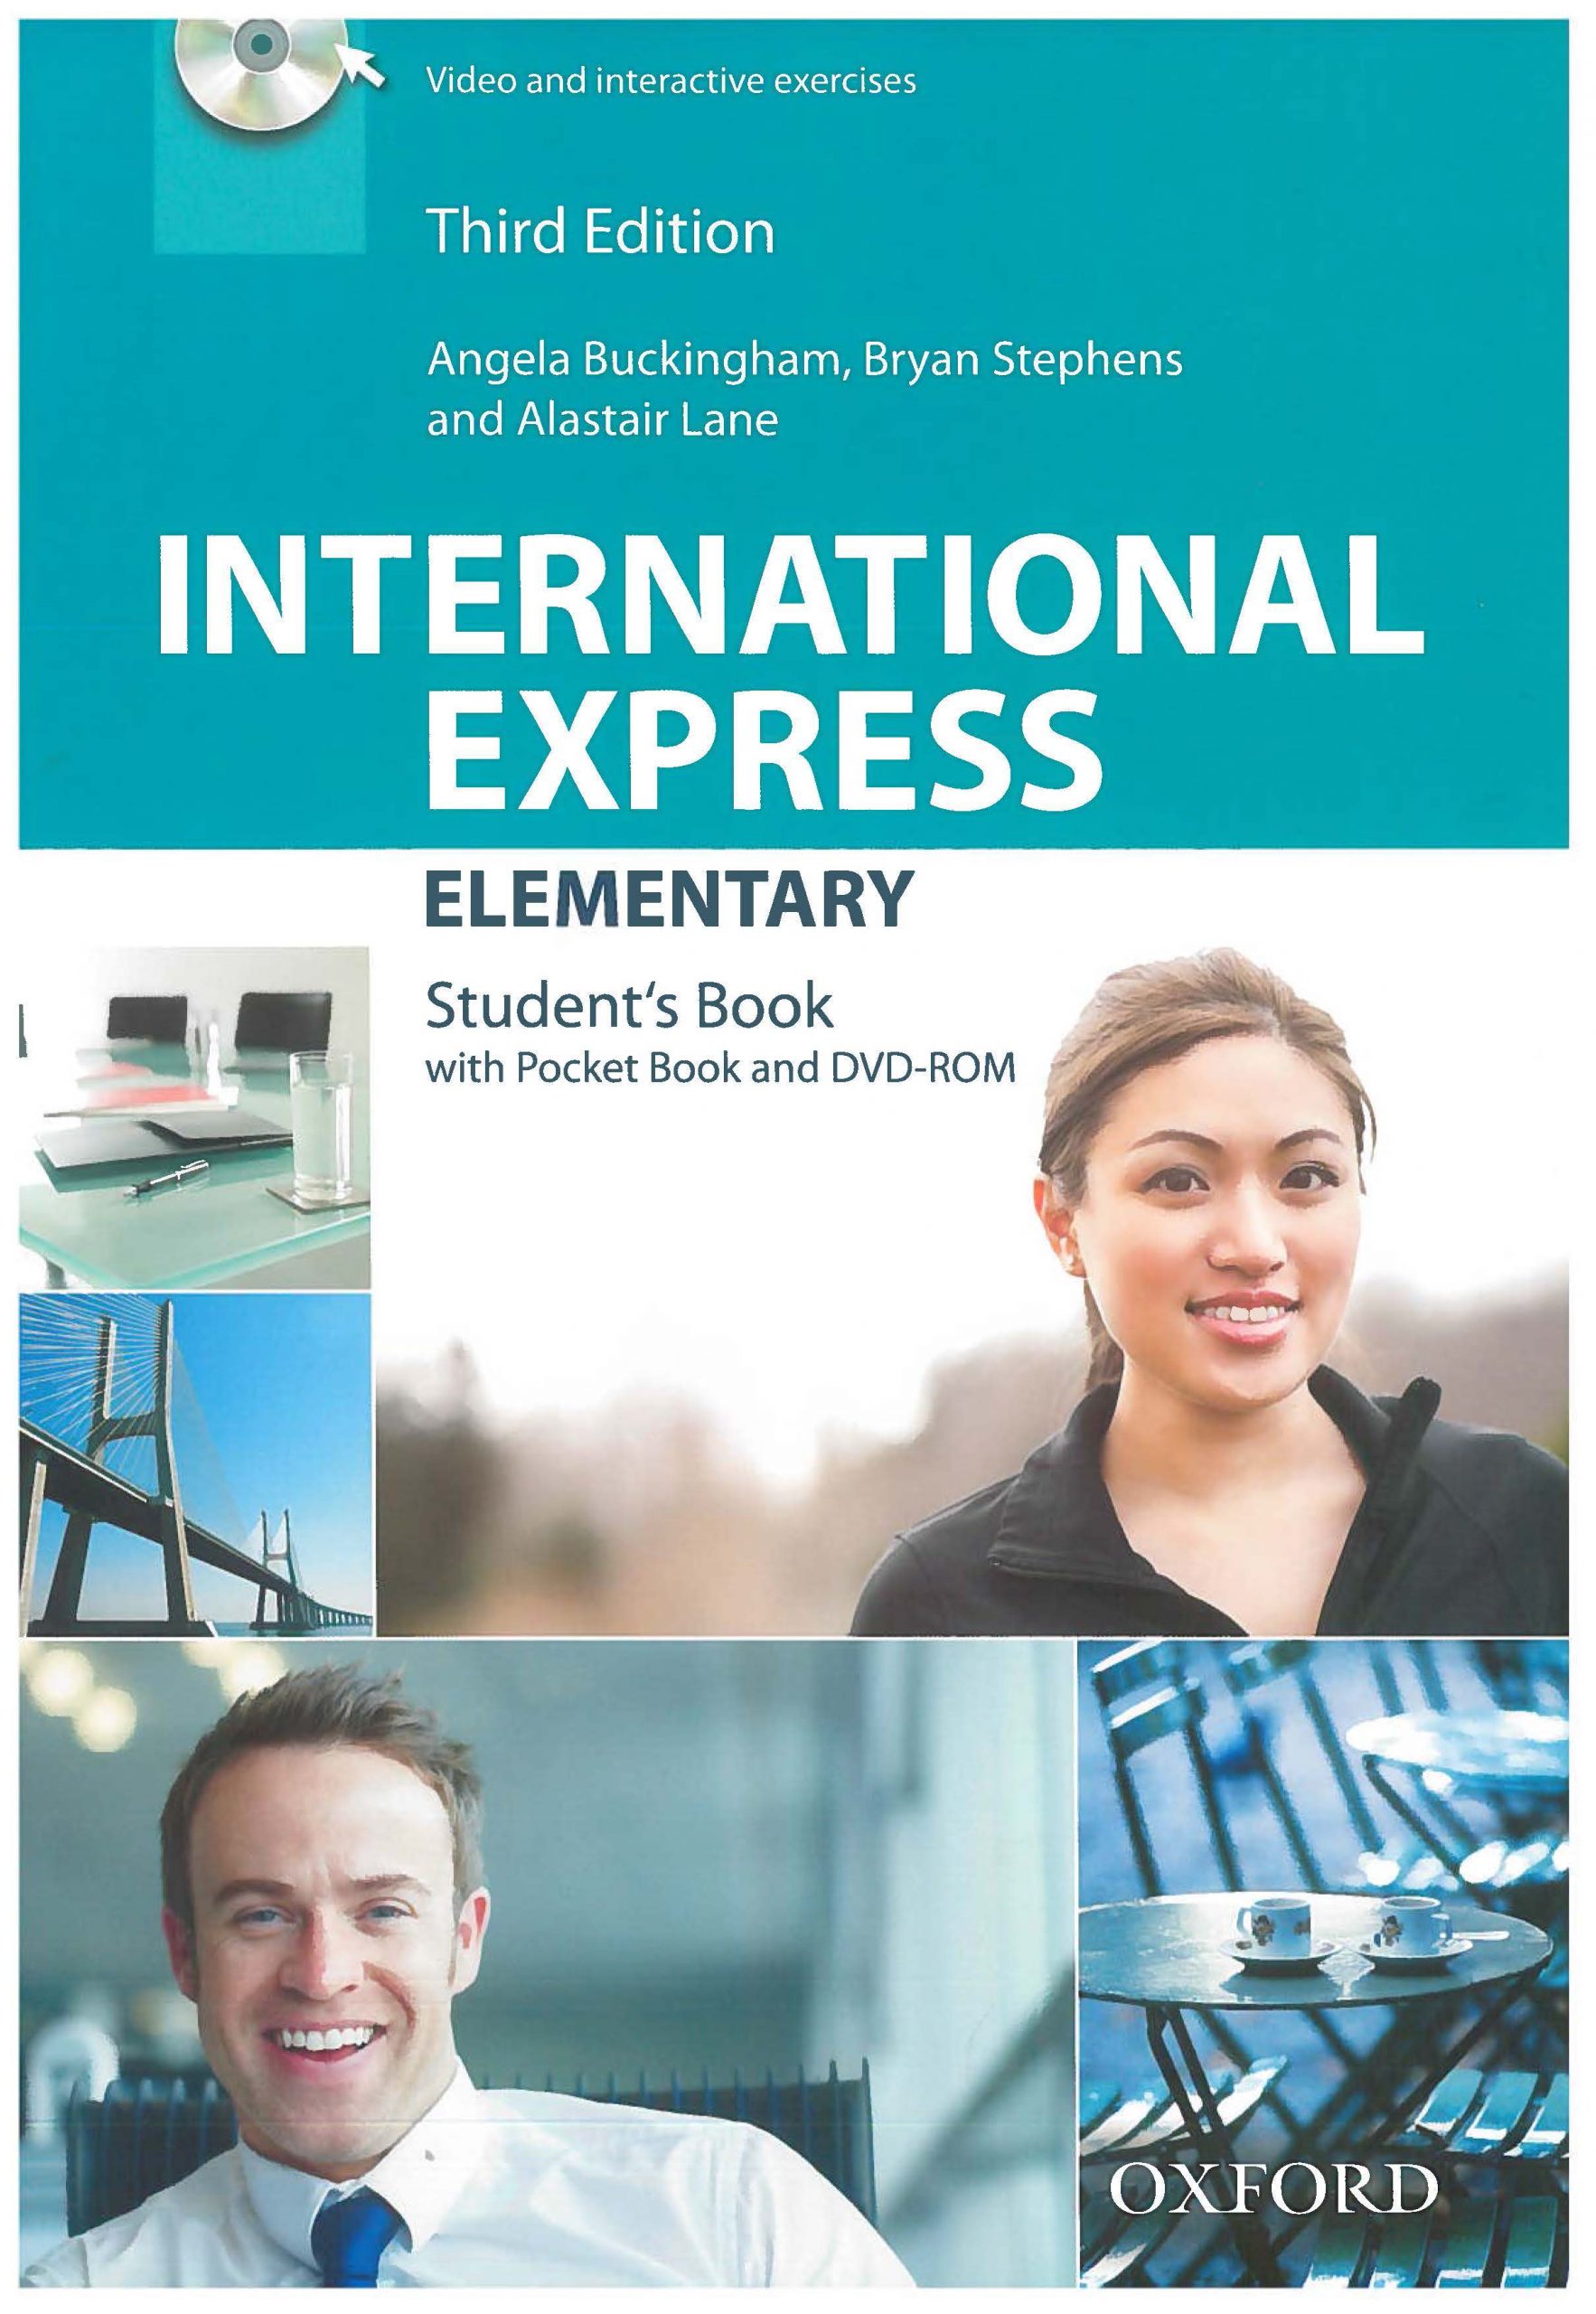 tiếng　Hà　giấy　Sách　Student's　Edition)　Sách]　(3rd　International　Anh　Elementary　Express　Nội　xoắn　Book　gáy　Sách